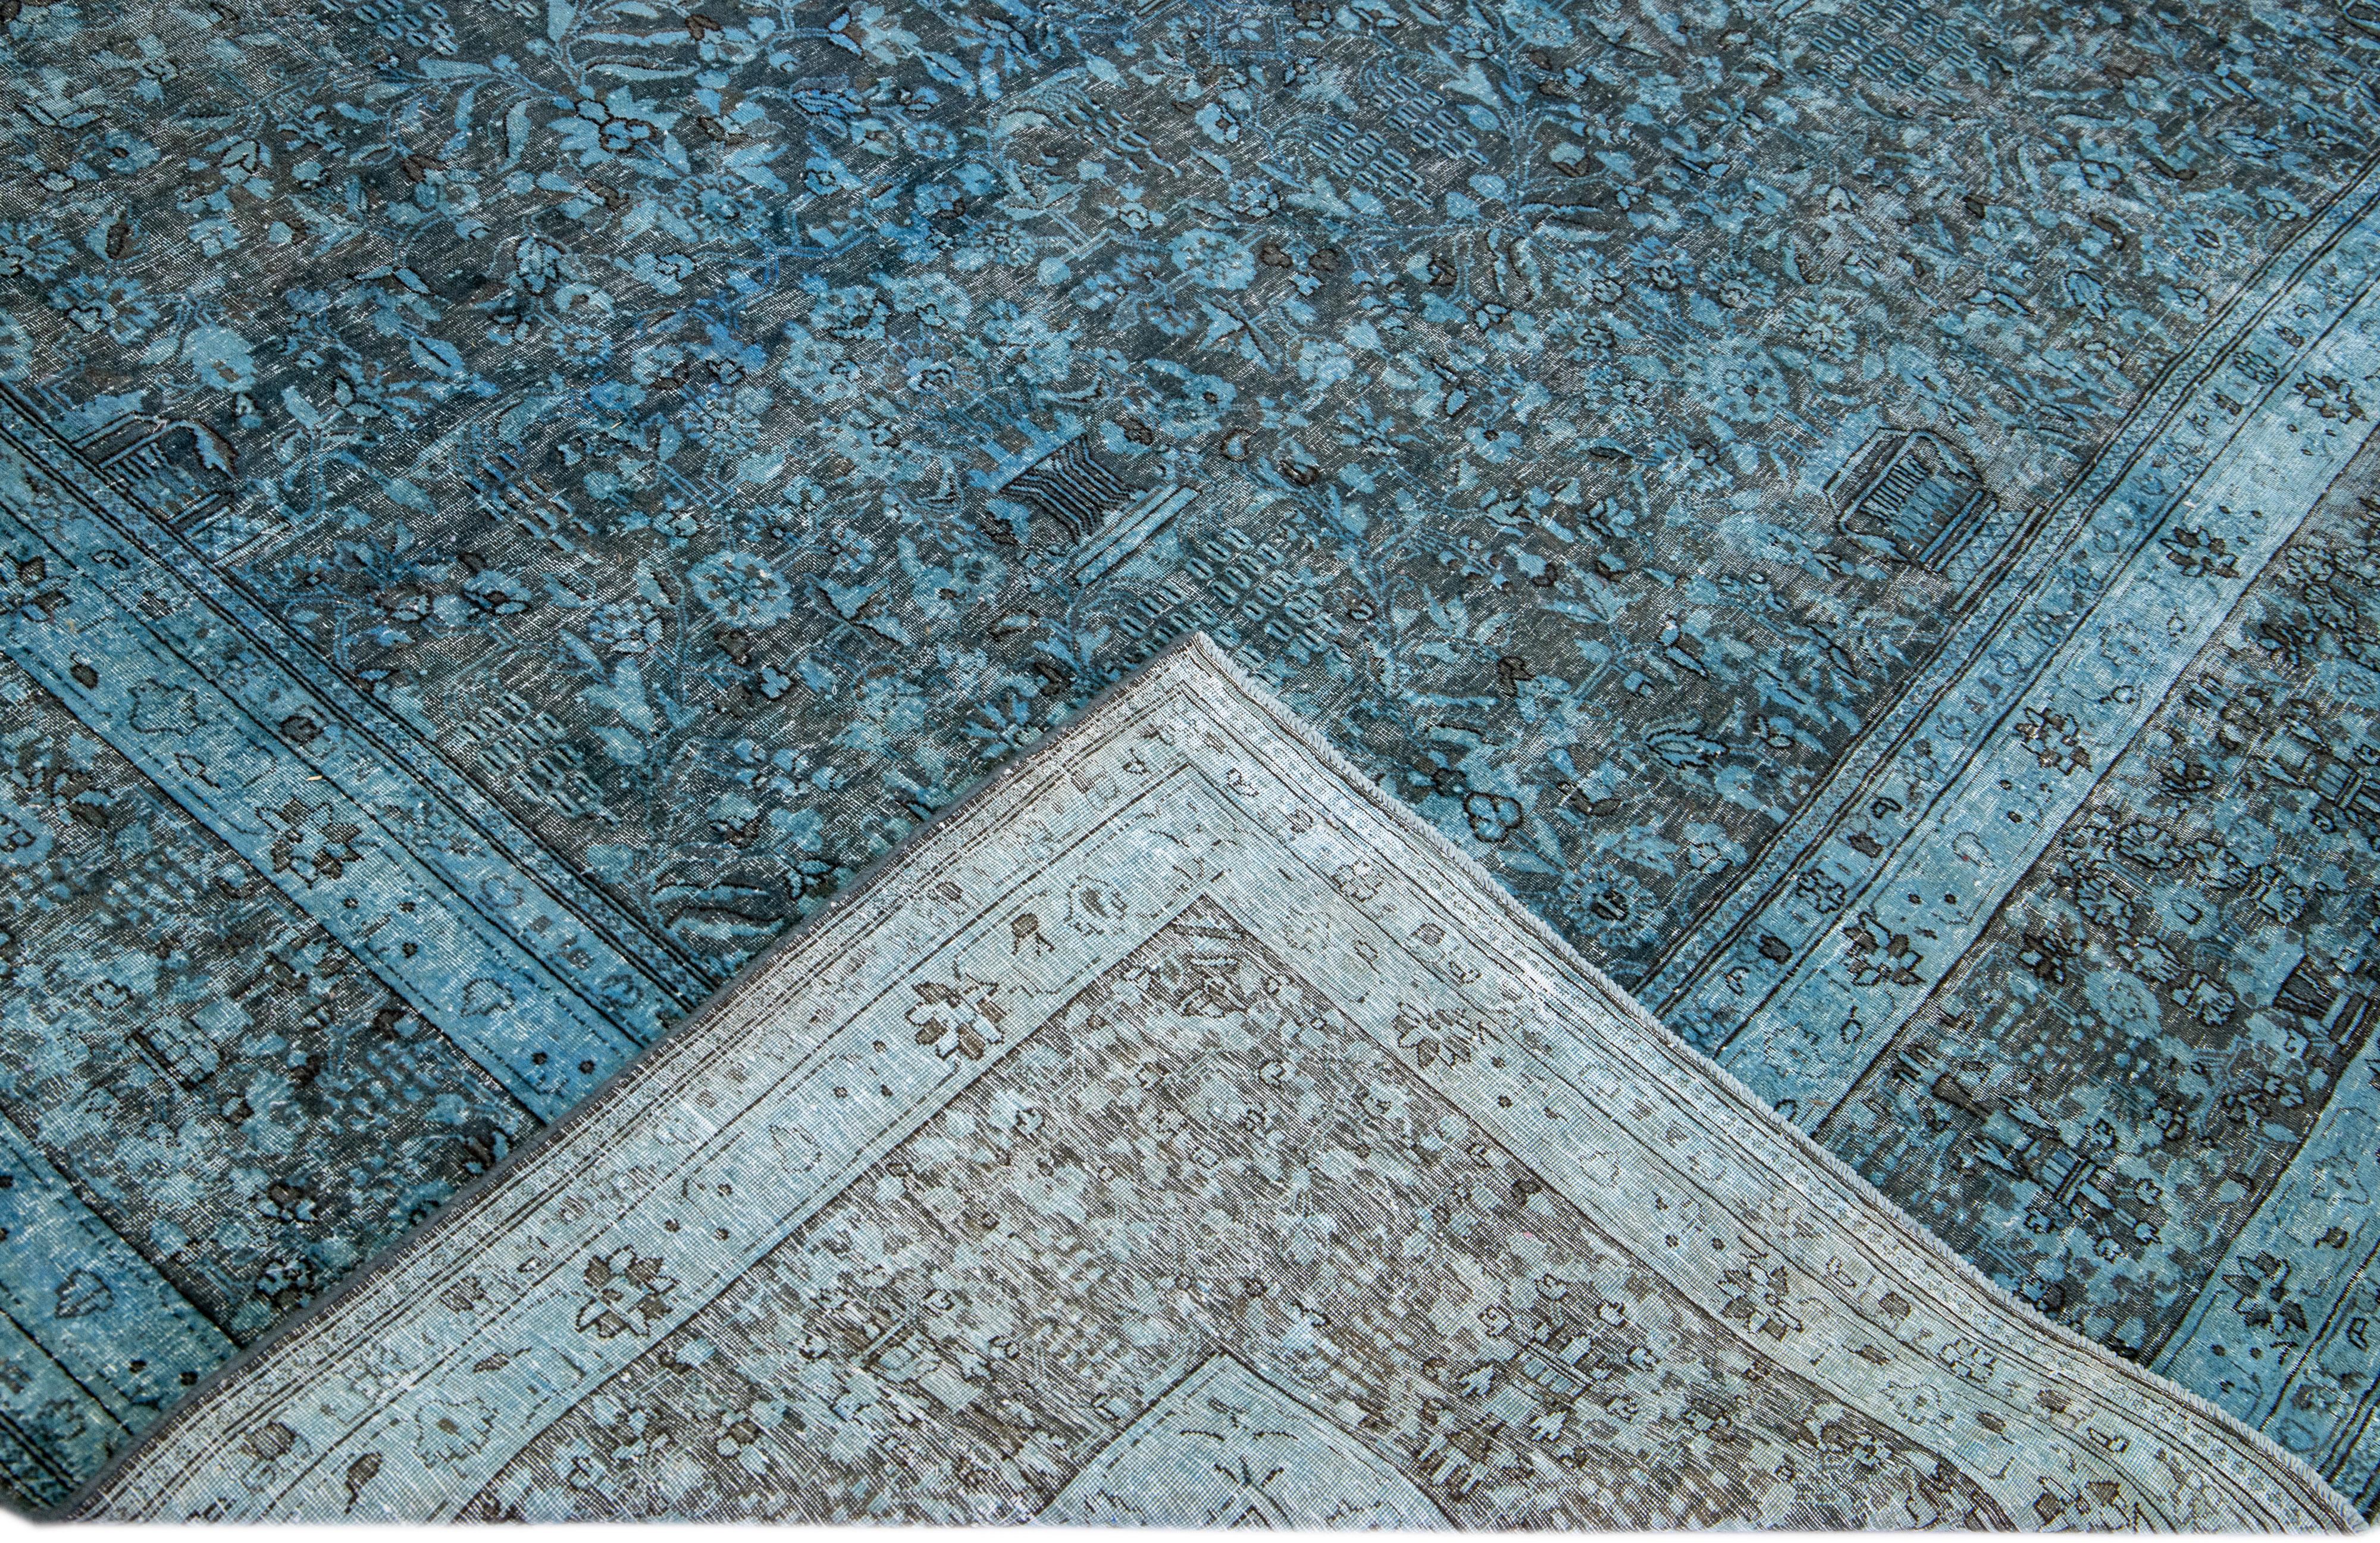 Magnifique tapis vintage en laine surteinte nouée à la main avec un champ bleu. Ce tapis persan présente un cadre gris et un motif floral sur toute sa surface.

Ce tapis mesure : 8'9